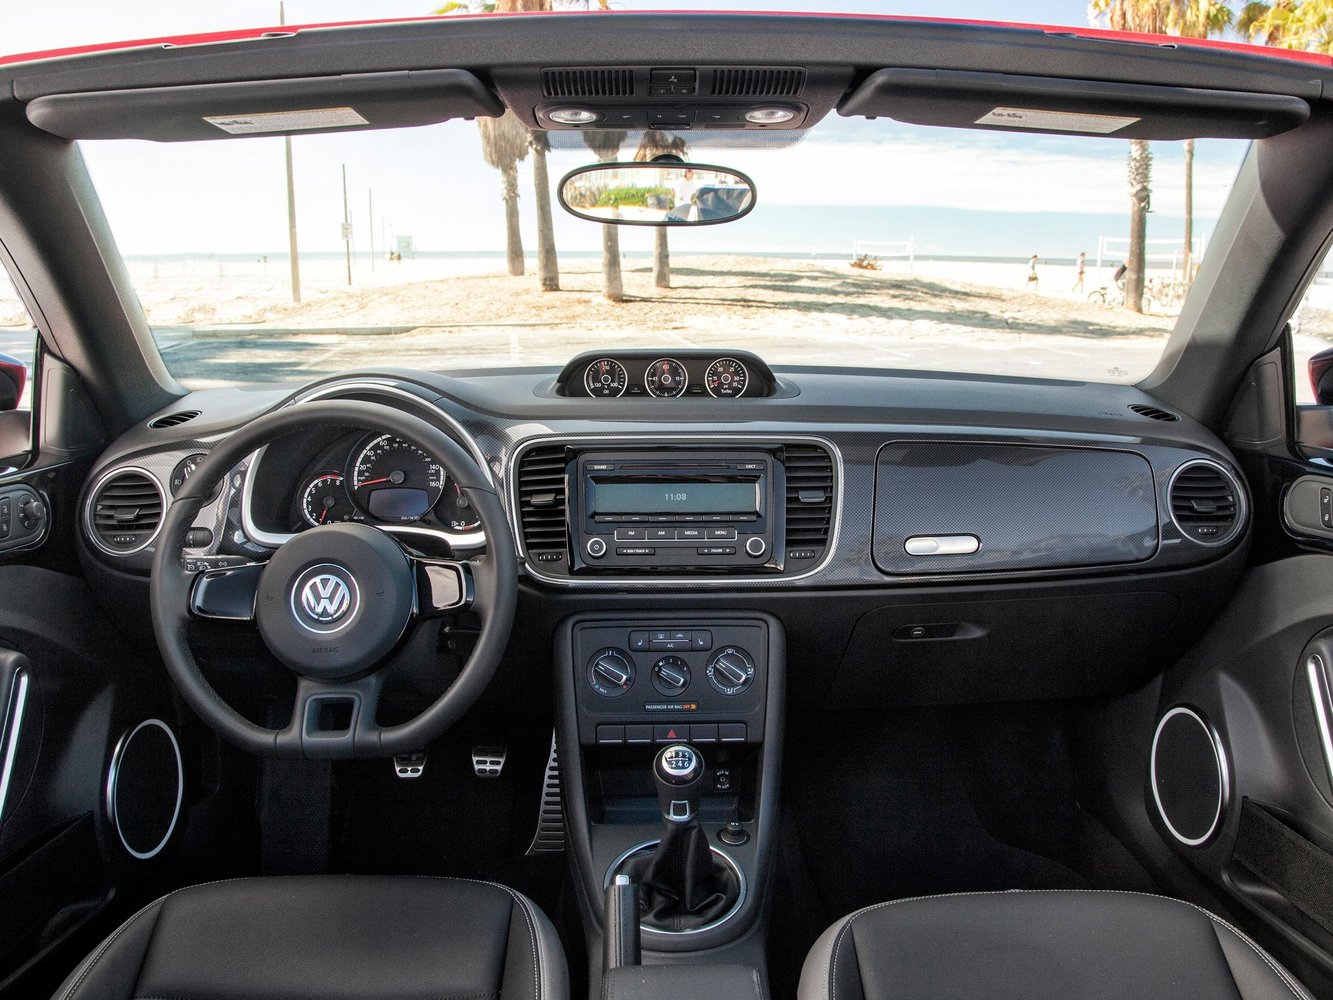 кабриолет Volkswagen Beetle 2013 - 2016г выпуска модификация 1.2 AMT (105 л.с.)